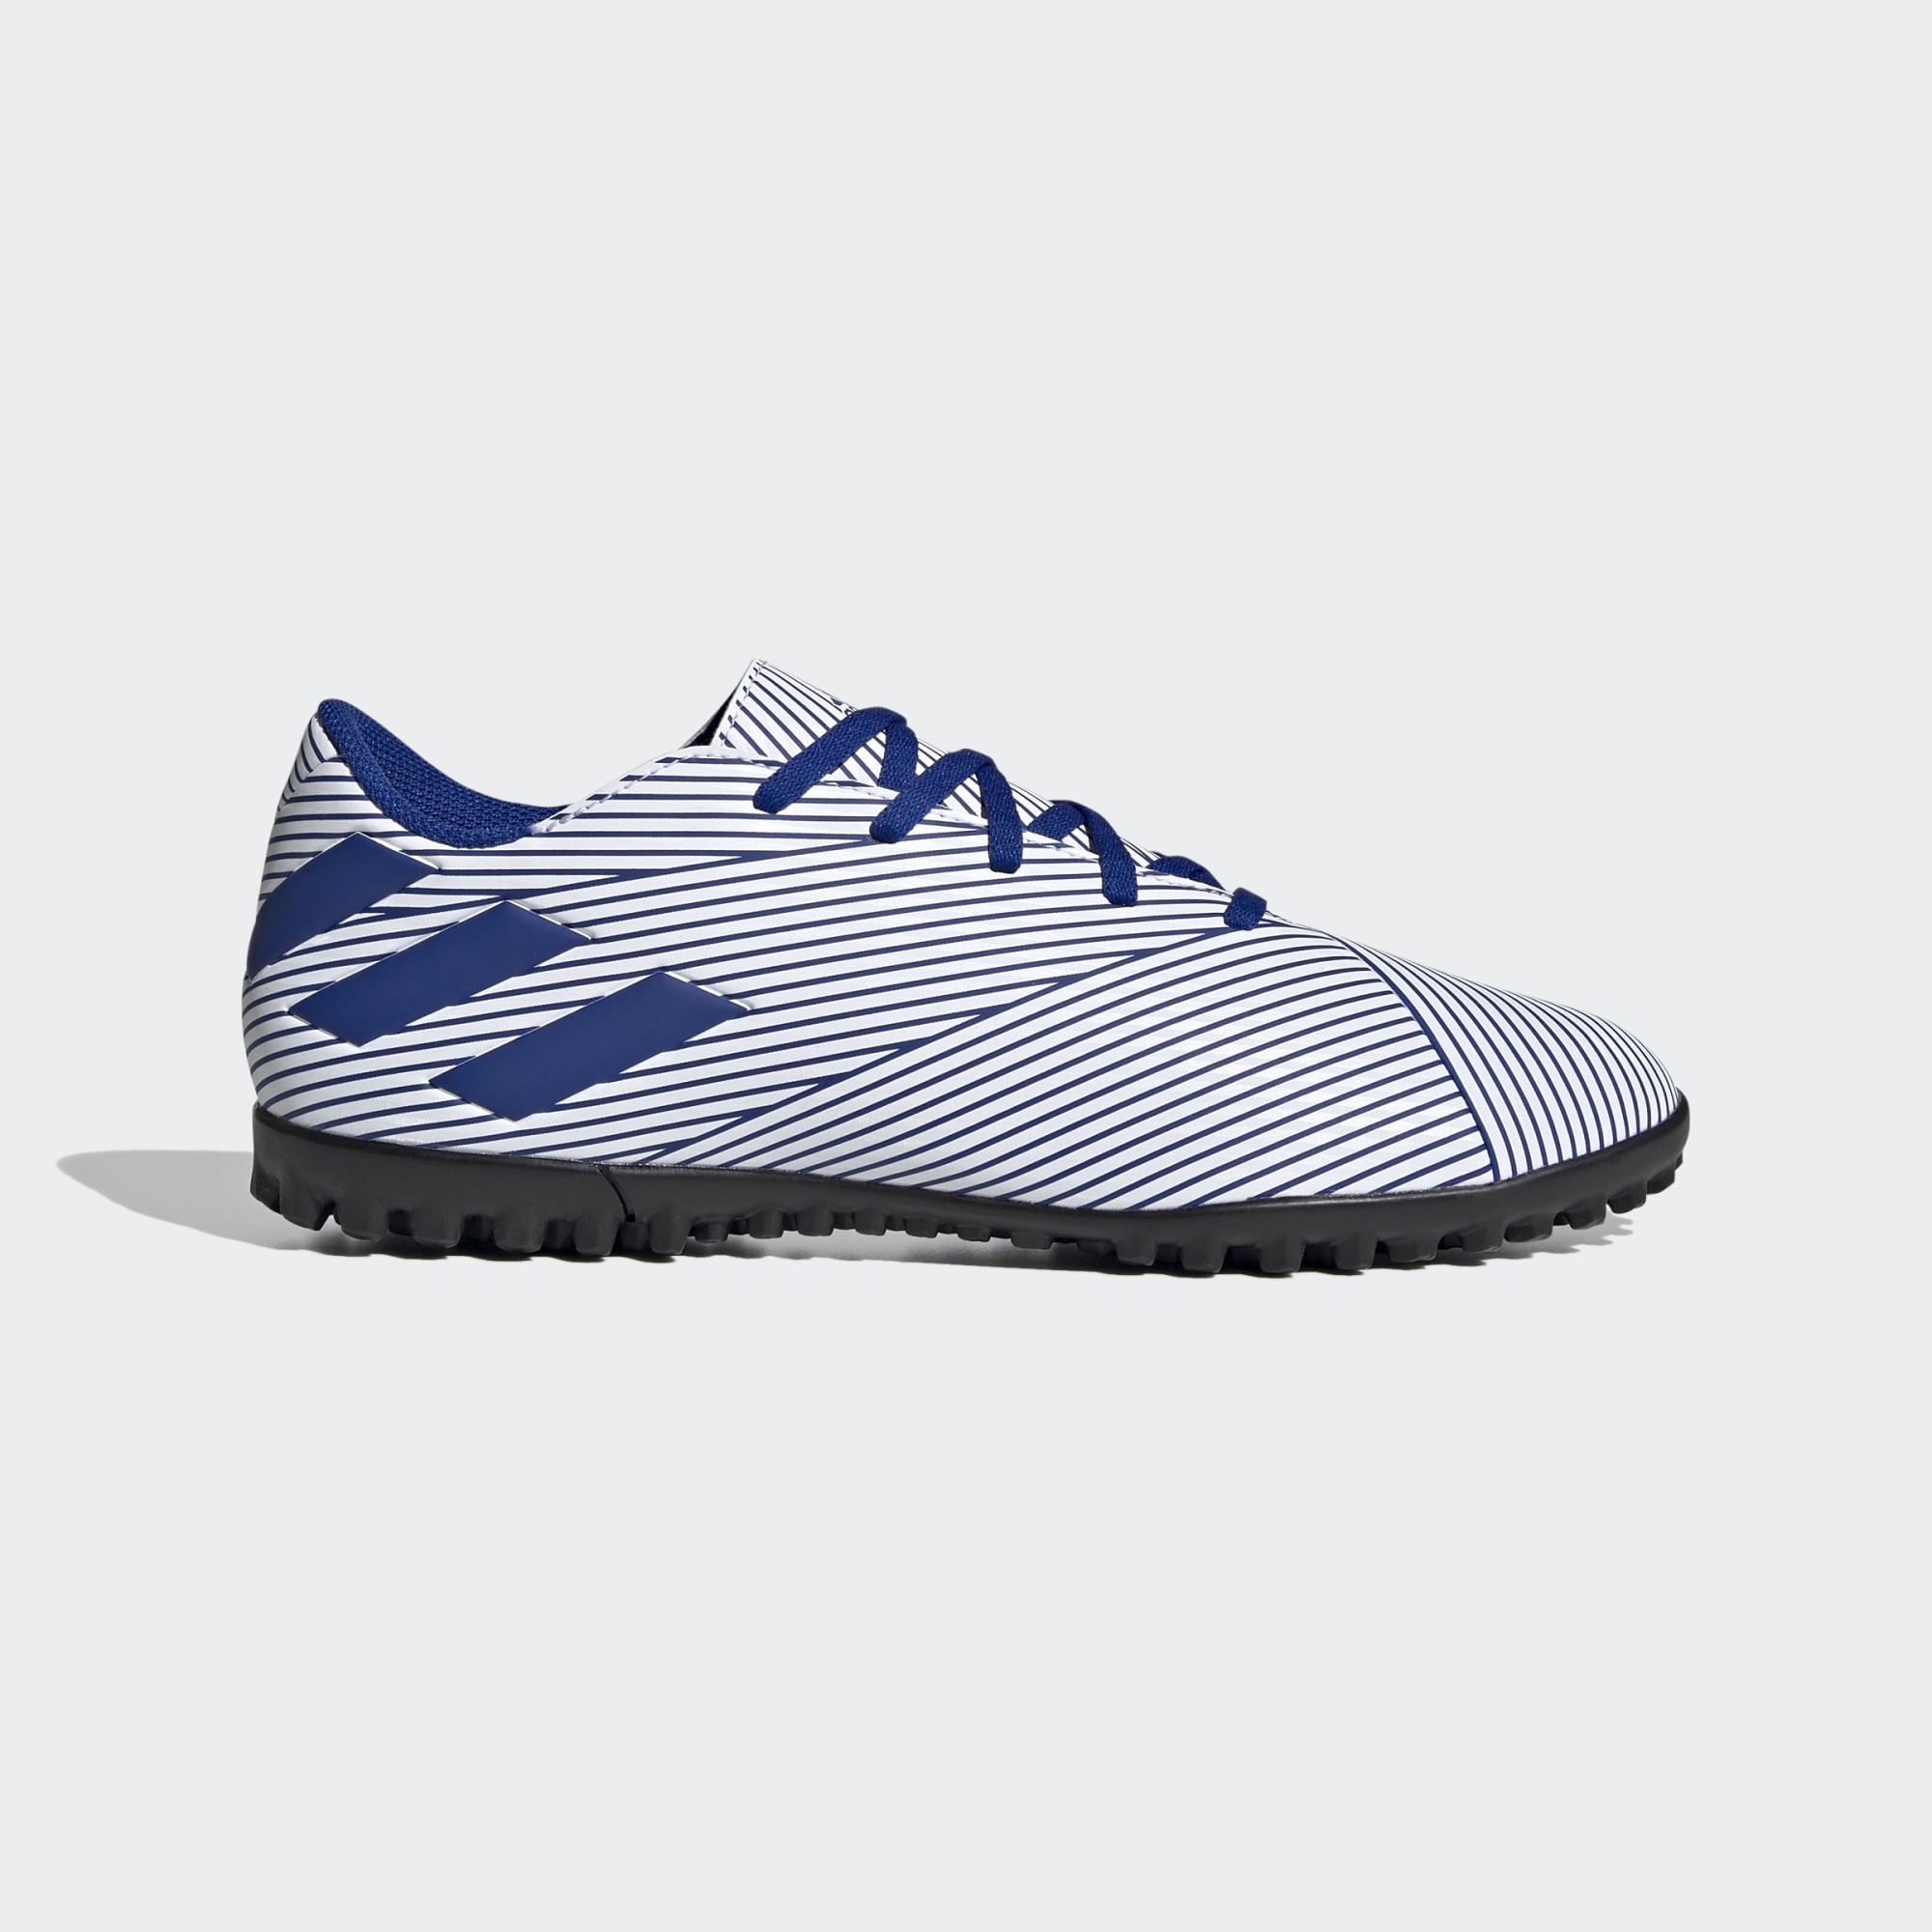 Giày sân cỏ nhân tạo Adidas Nemeziz 19.4 TF với thiết kế đơn giản